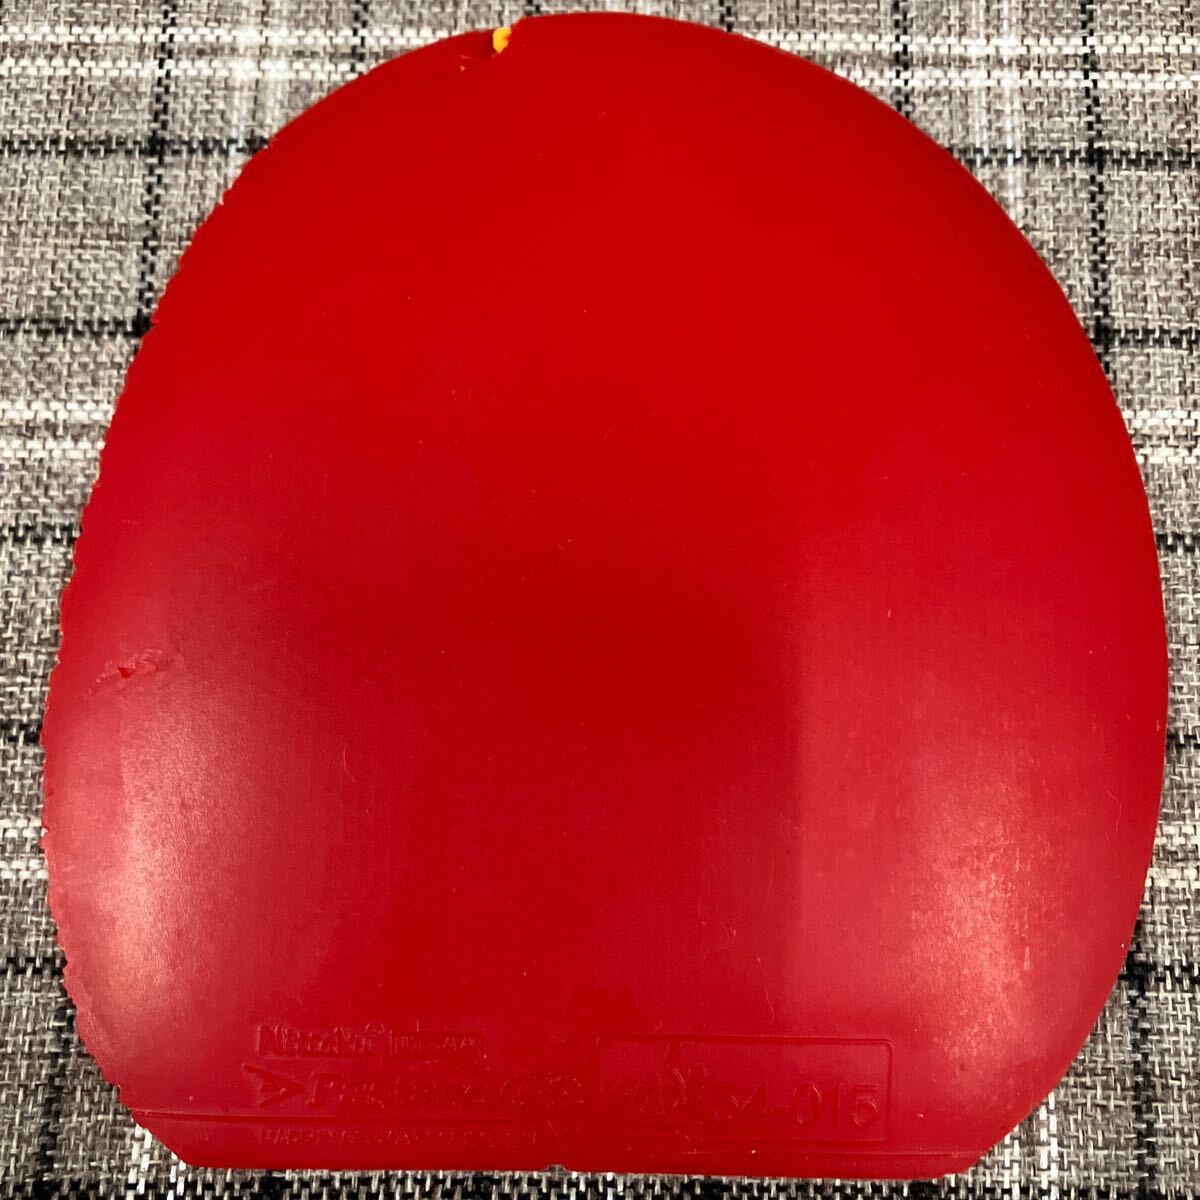 【卓球】 ファスタークG-1 赤色 厚 レッド アツ ファスタークG1 ニッタク nittaku fastarcG1 卓球ラバーの画像1